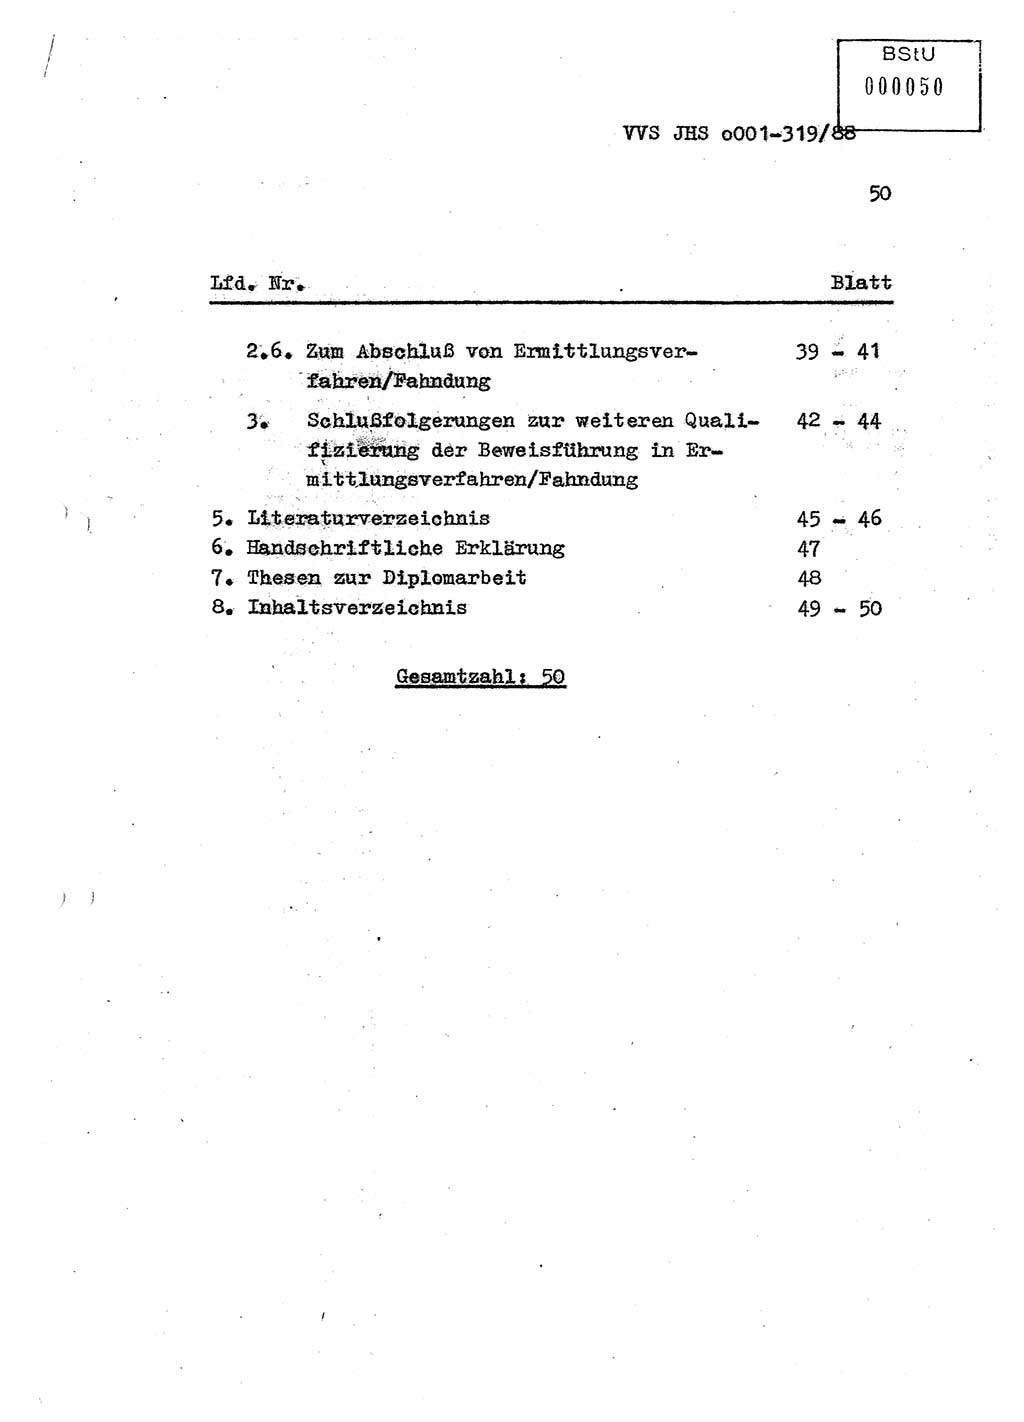 Diplomarbeit Offiziersschüler Holger Zirnstein (HA Ⅸ/9), Ministerium für Staatssicherheit (MfS) [Deutsche Demokratische Republik (DDR)], Juristische Hochschule (JHS), Vertrauliche Verschlußsache (VVS) o001-319/88, Potsdam 1988, Blatt 50 (Dipl.-Arb. MfS DDR JHS VVS o001-319/88 1988, Bl. 50)